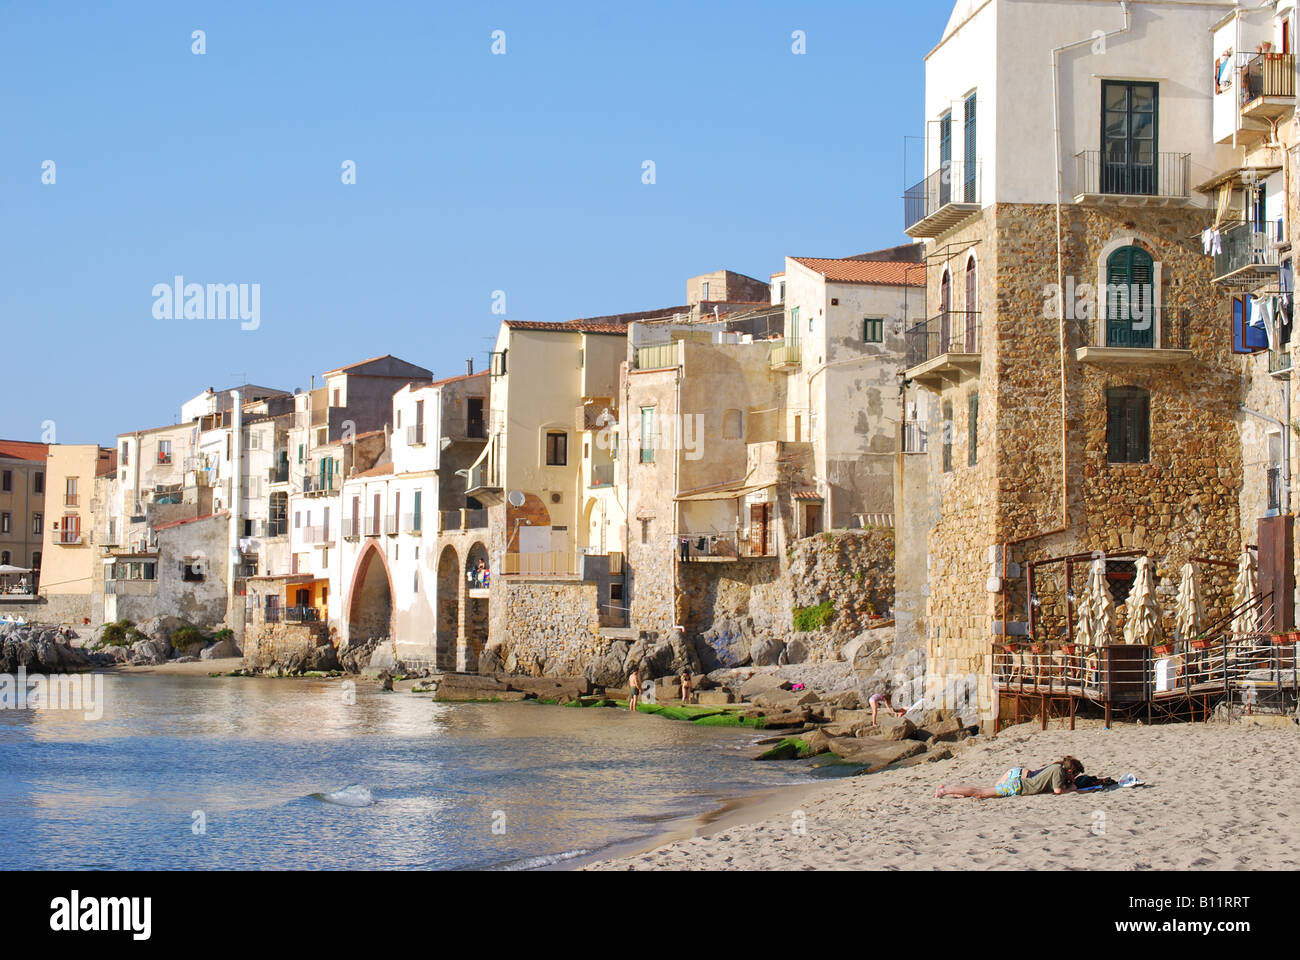 Plage et bord de mer, Cefalu, Province de Palerme, Sicile, Italie Banque D'Images